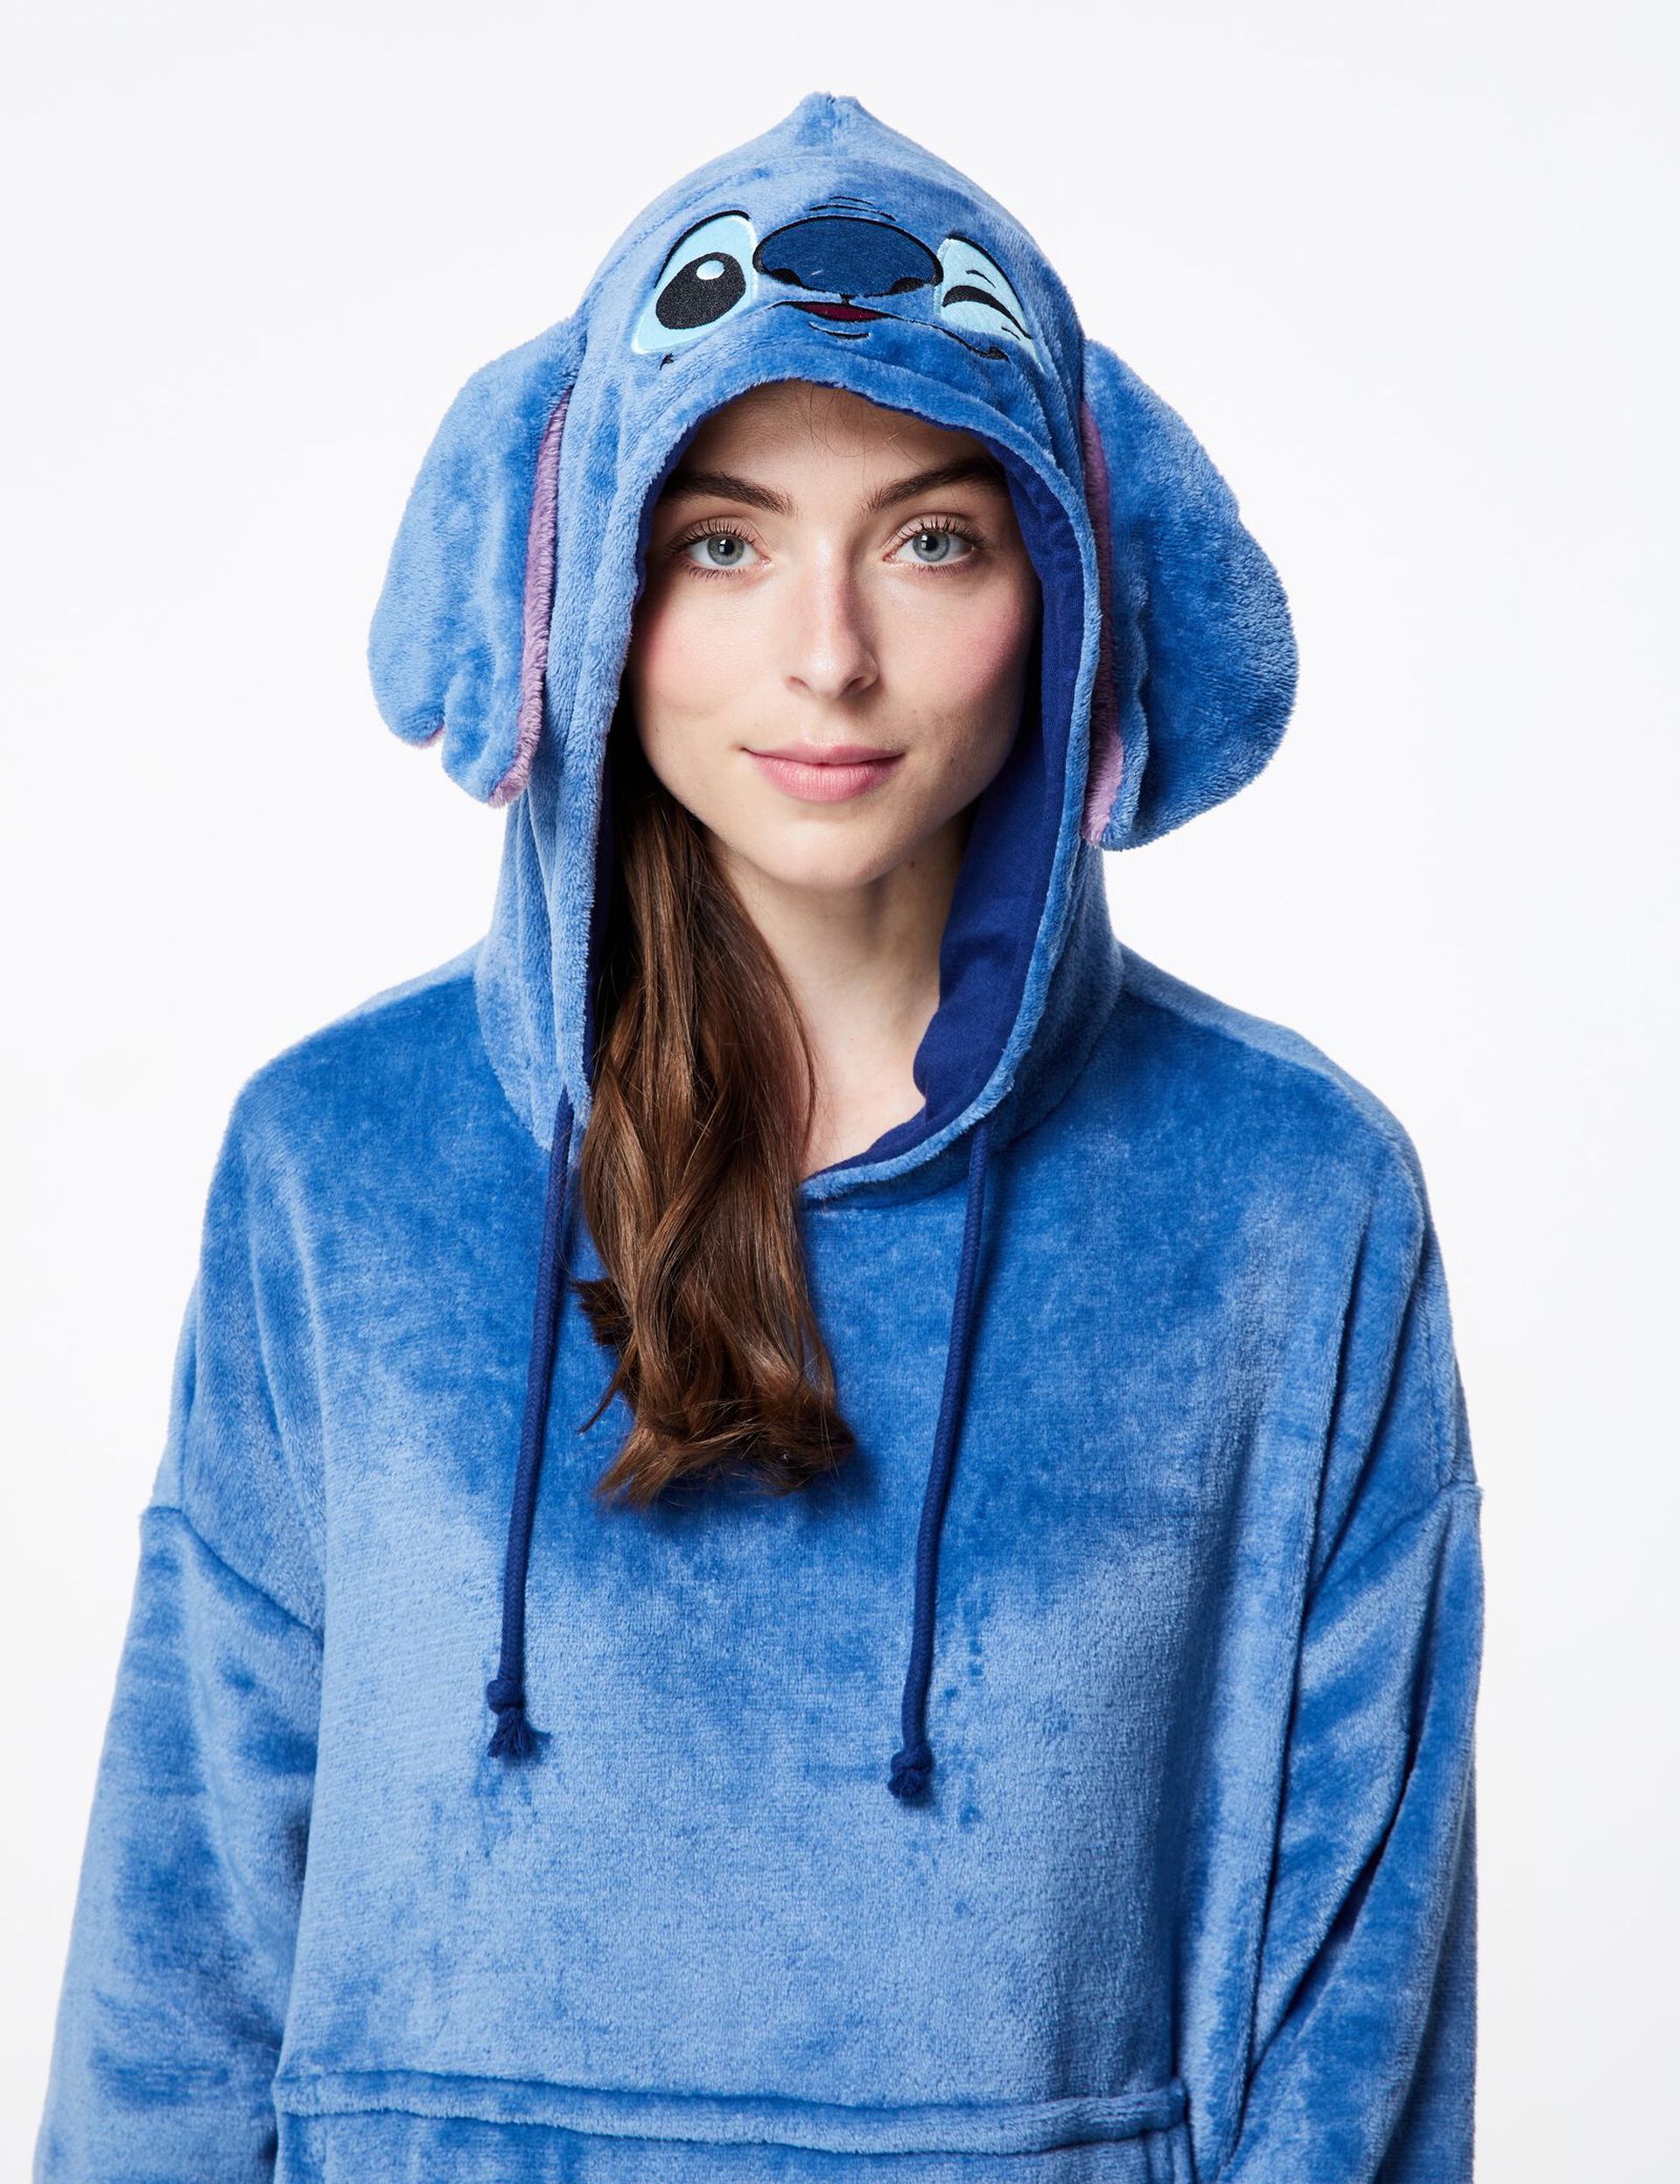 Stitch Disney Sweat-shirt/Robe pour femme, couverture à capuche